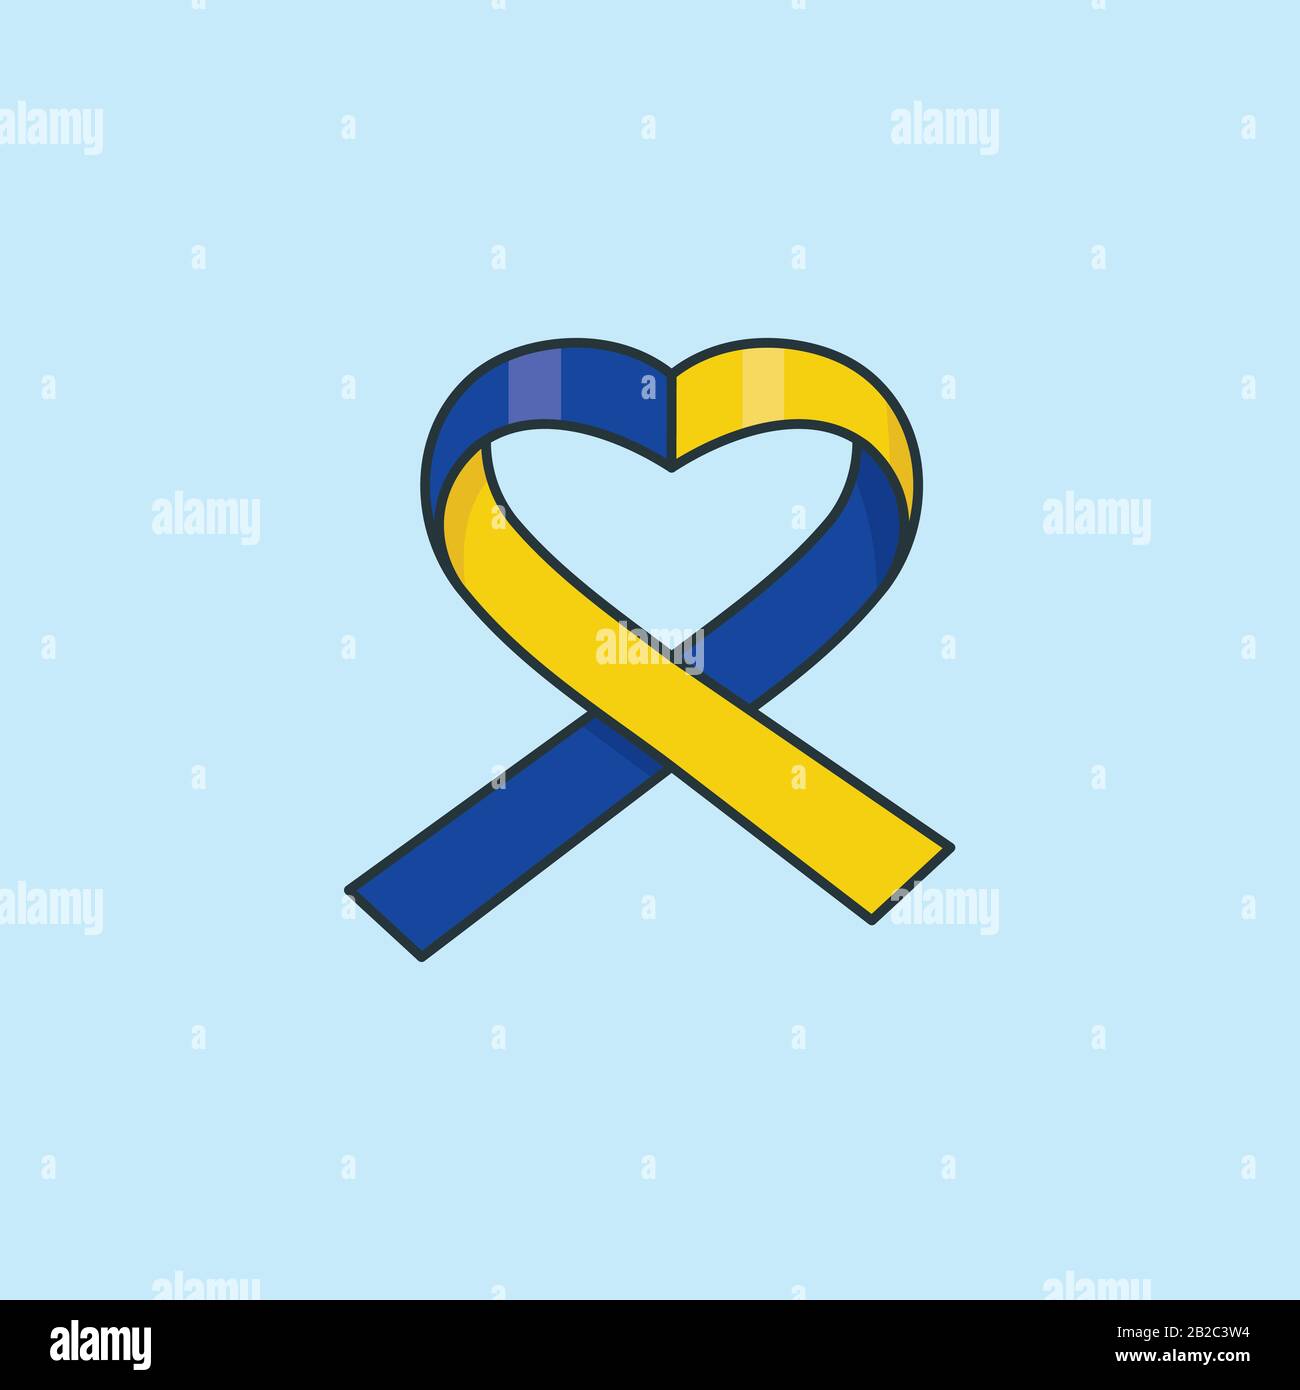 Illustrazione del vettore del nastro blu e giallo di forma cardiaca per il giorno della sindrome Di Down il marzo 21st. Simbolo di consapevolezza del disturbo genetico. Illustrazione Vettoriale